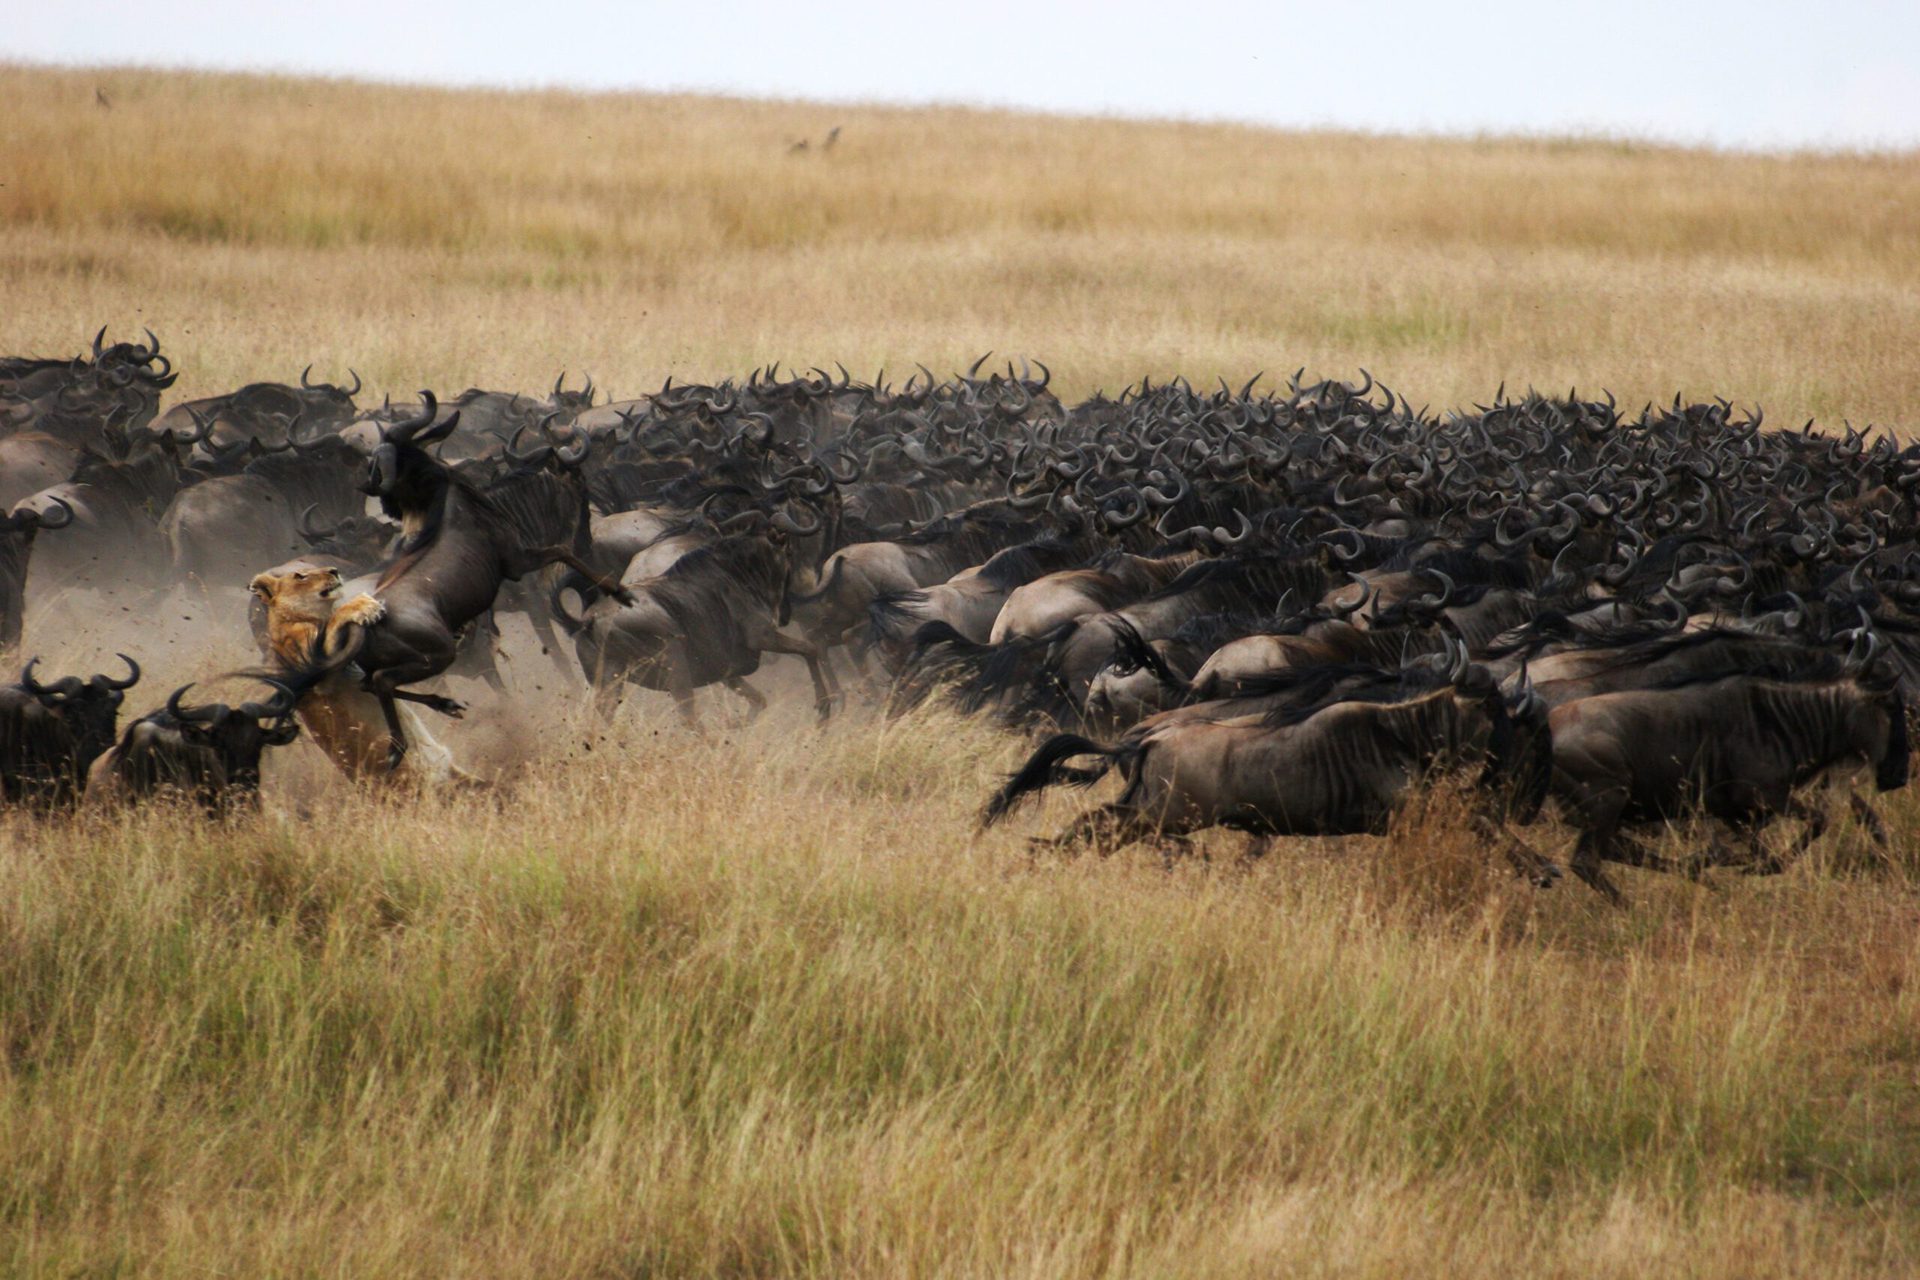 a herd of wild animals running through a dry grass field.